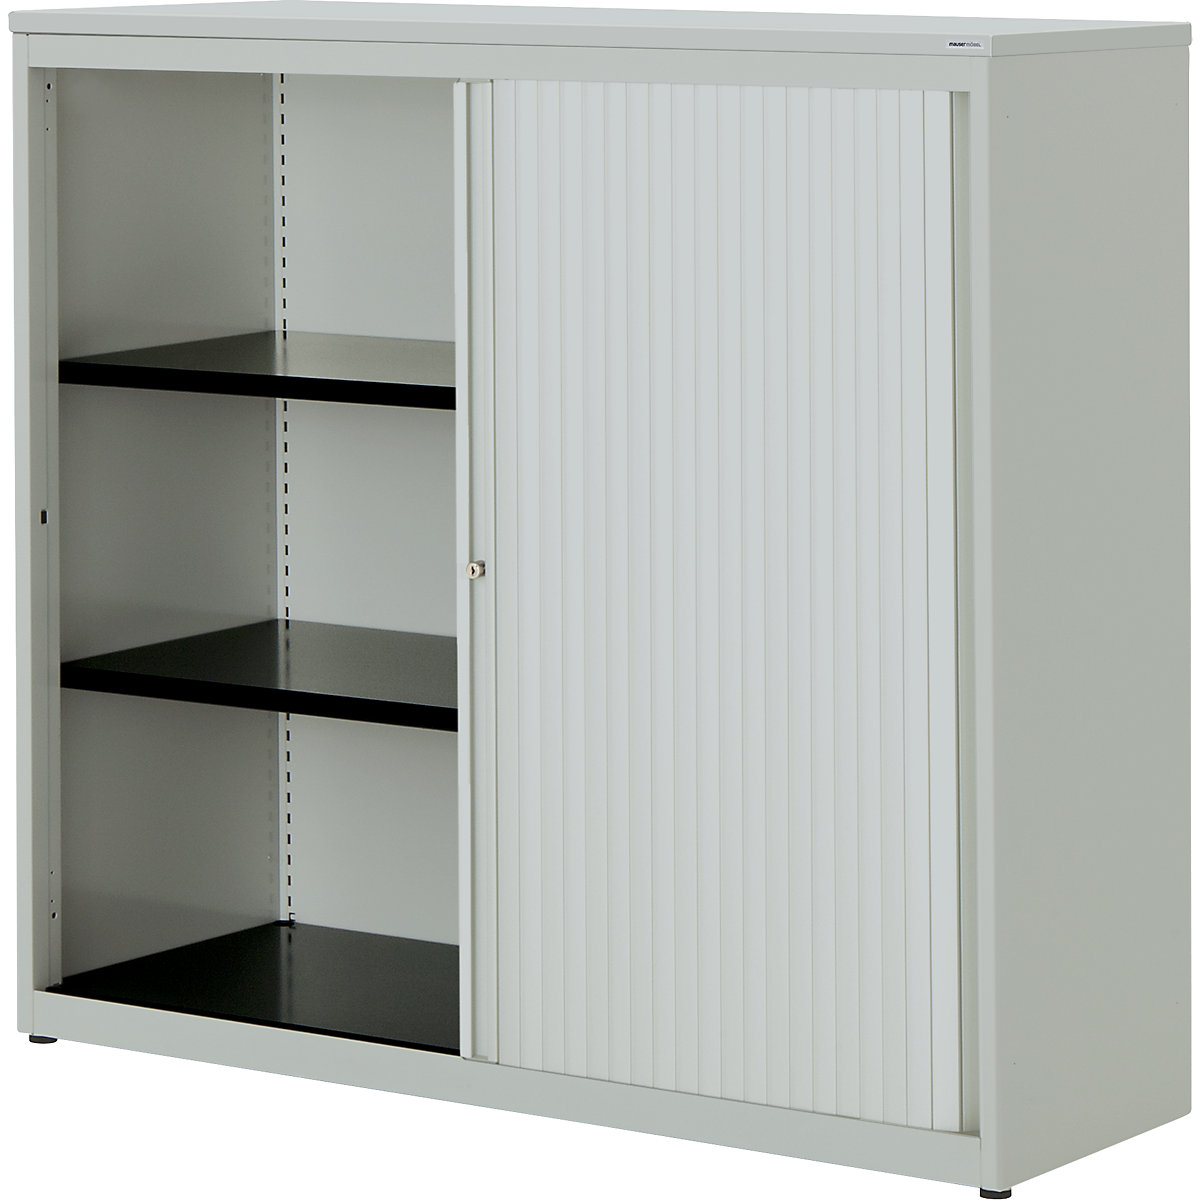 Horizontal roller shutter cupboard – mauser, HxWxD 1180 x 1200 x 432 mm, plastic panel, 2 shelves, light grey / light grey / light grey-3